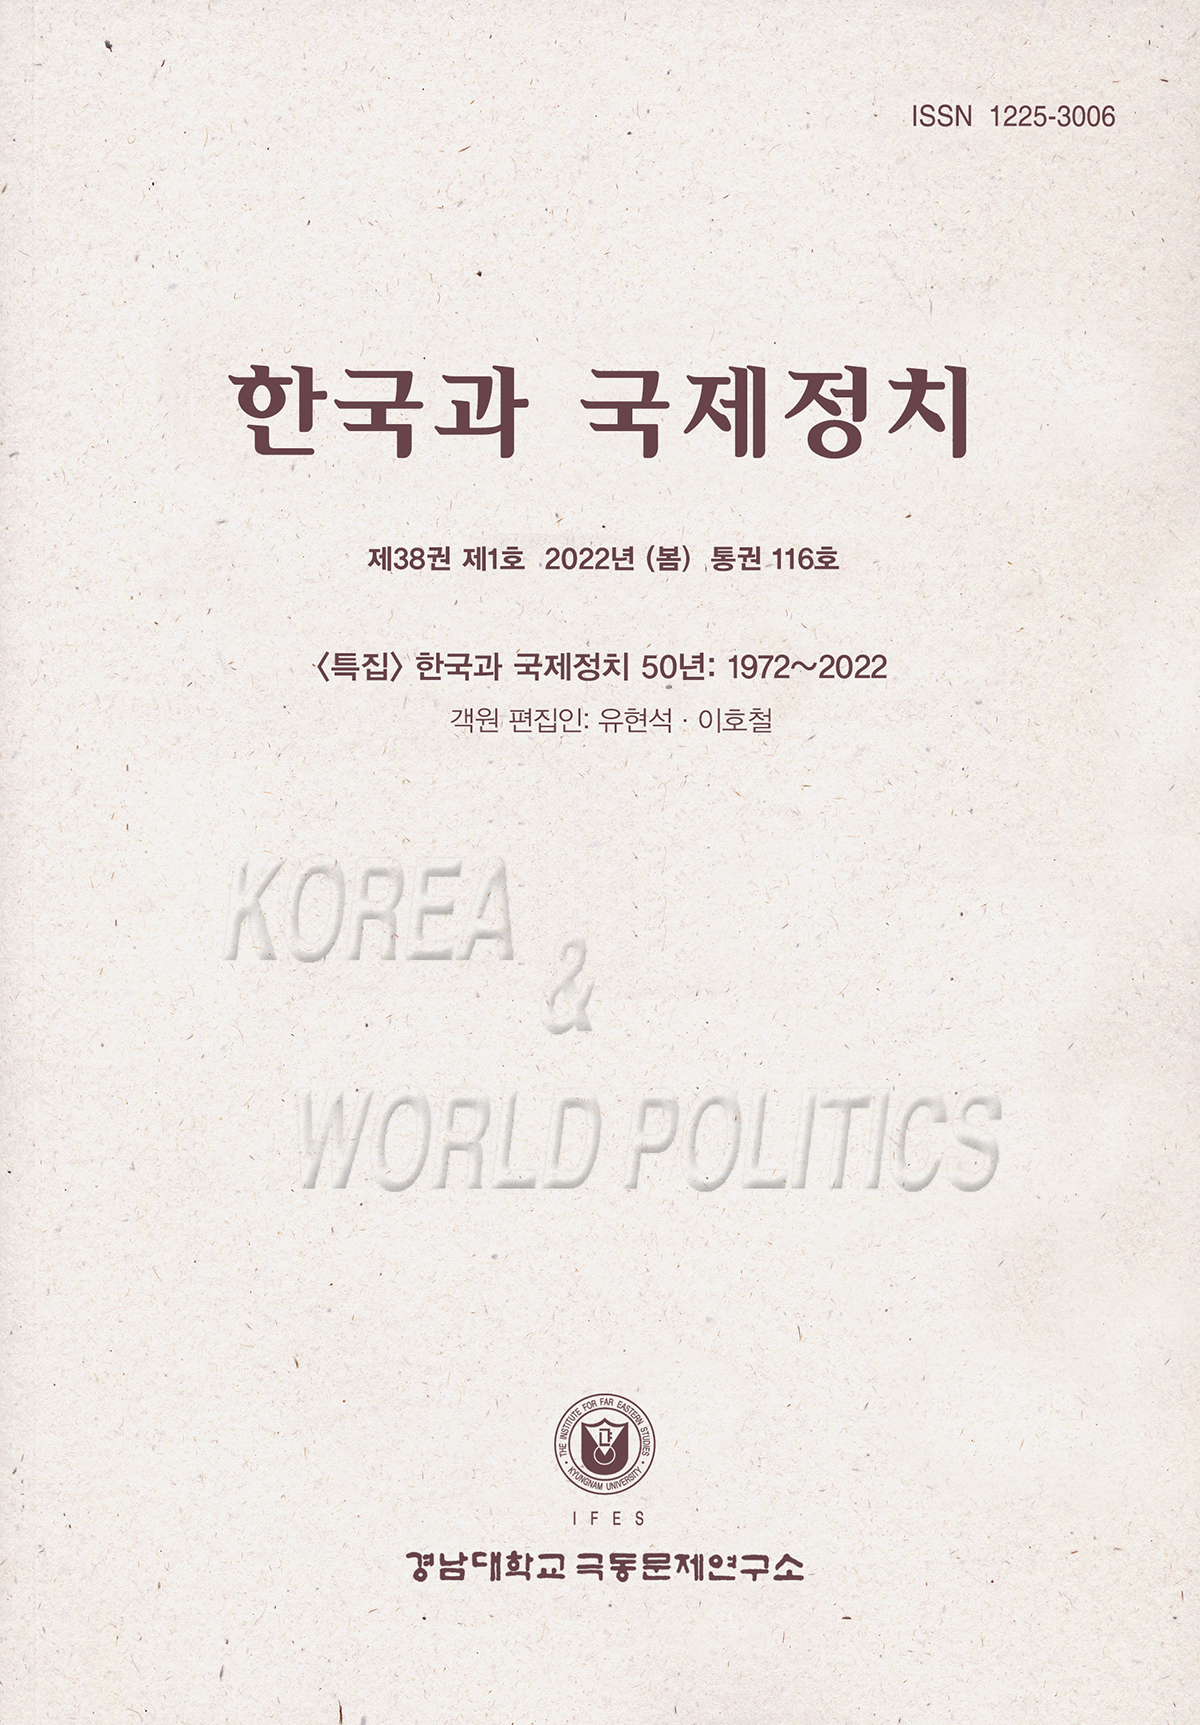 Korea and World Politics, Vol.38, No.1